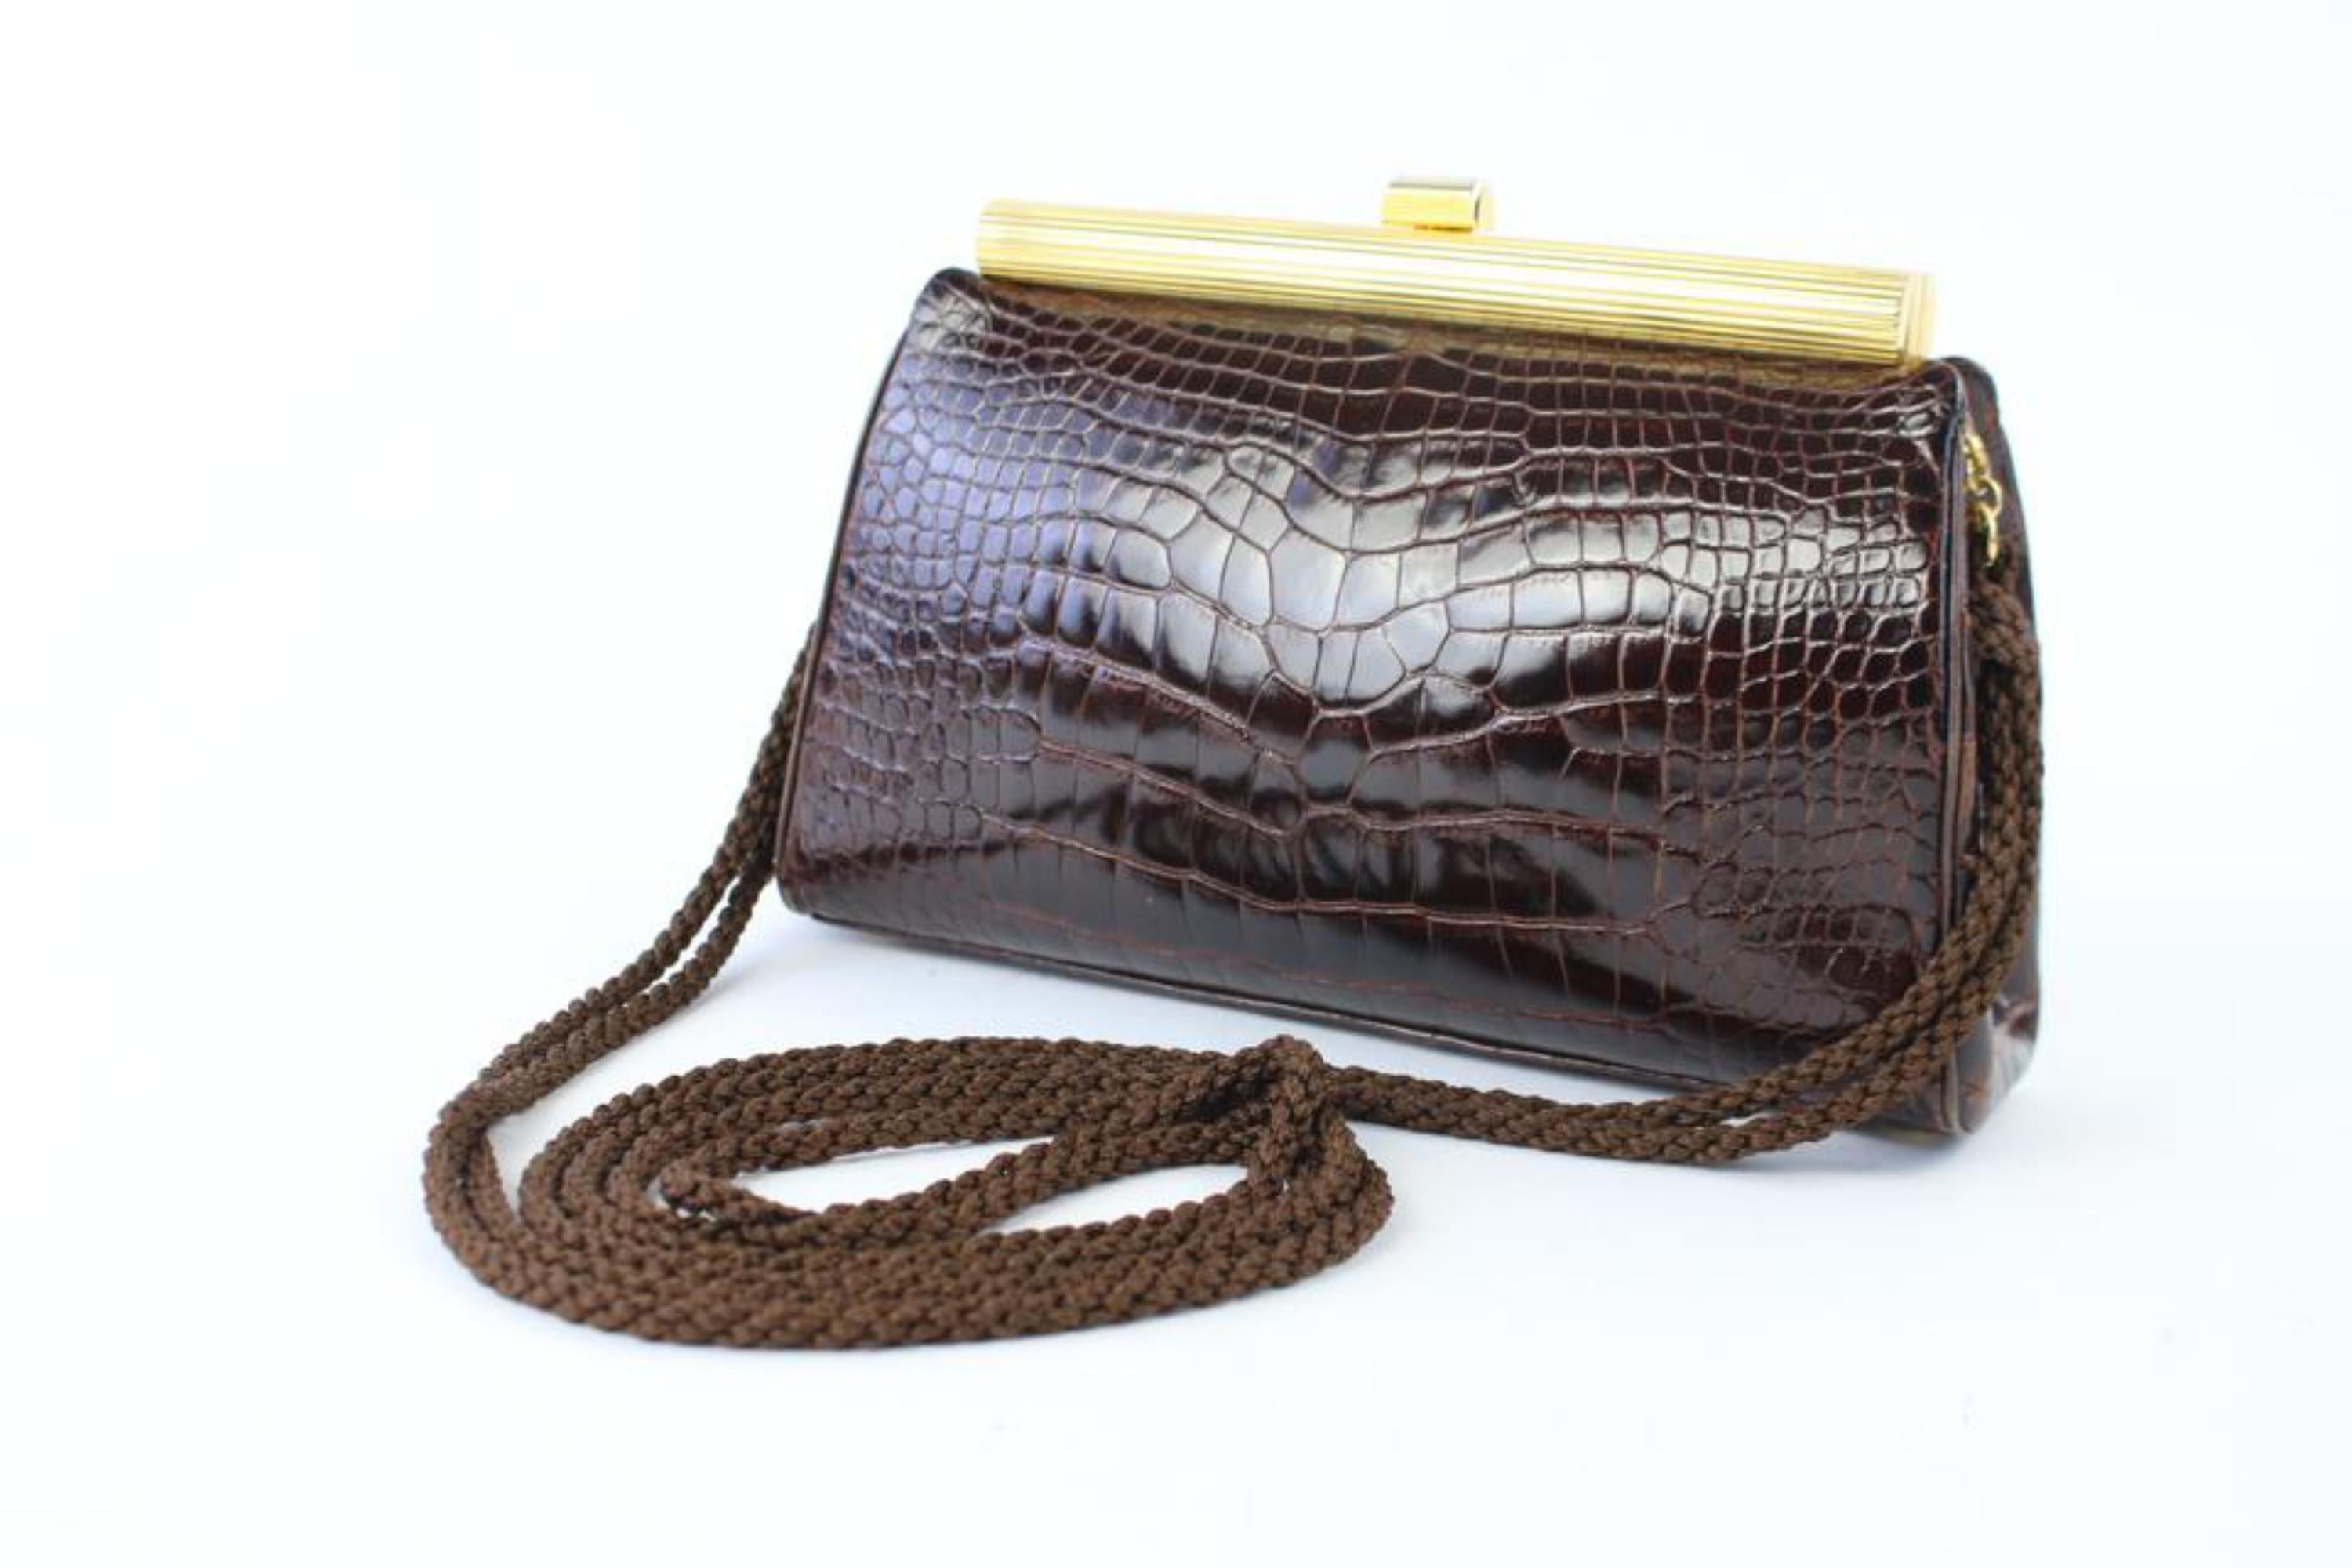 Judith Leiber Rare Vintage Alligator Kelly Flap Bag For Sale at 1stDibs   vintage alligator handbag, judith leiber alligator bag, alligator bag  vintage